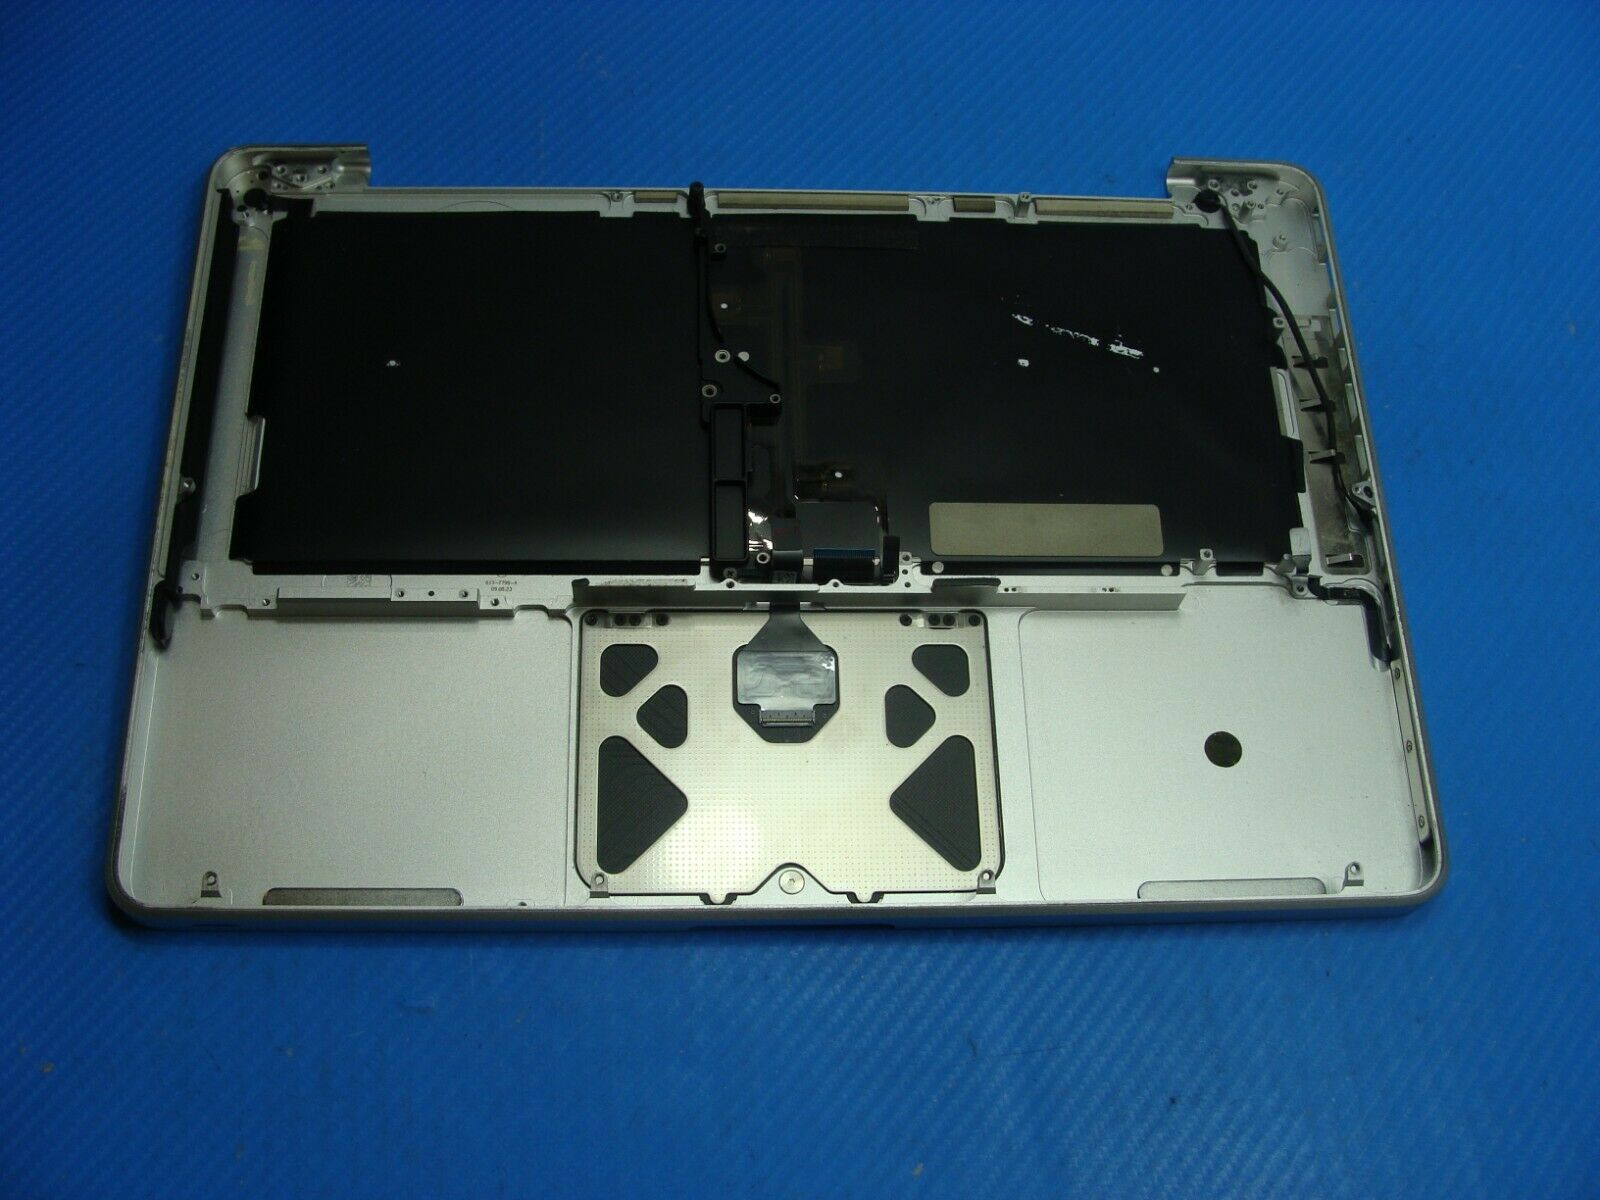 MacBook Pro A1278 MB990LL/A Mid 2009 13